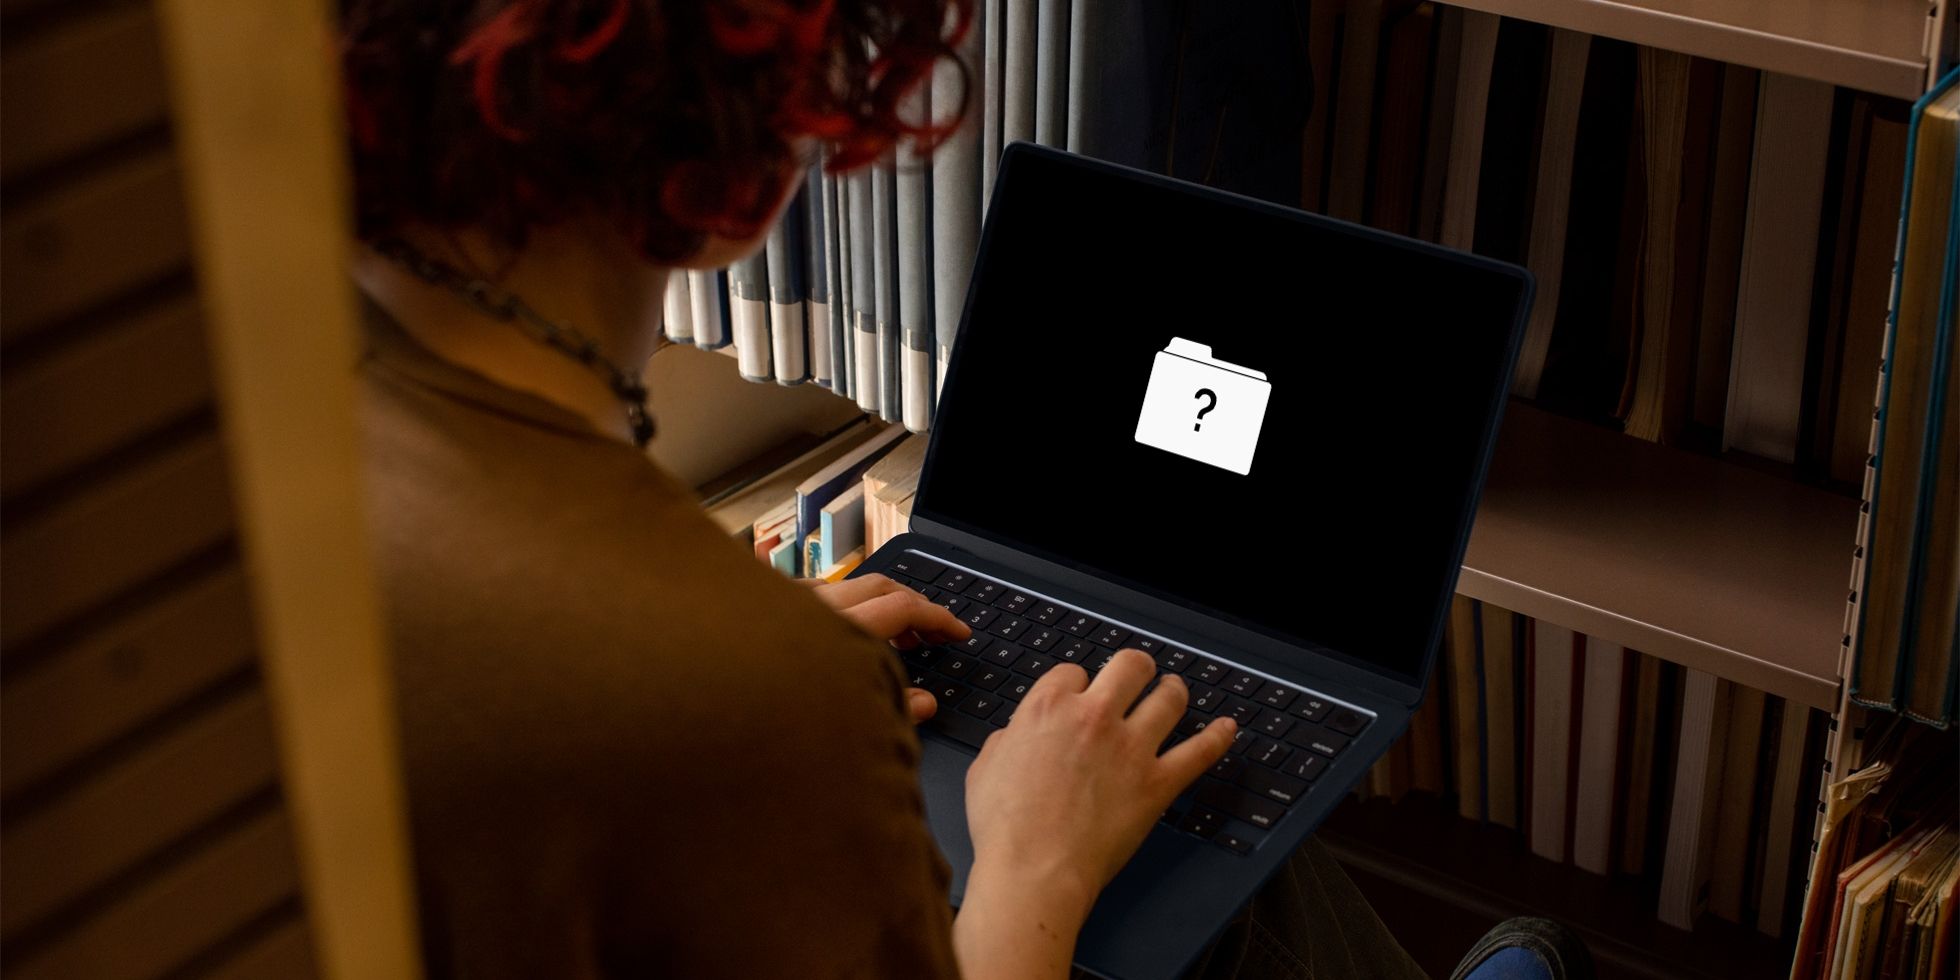 زنی که پشت میزش نشسته و در حال عیب یابی لپ تاپ مک بوک ایر است که علامت سوالی را روی صفحه نمایش نشان می دهد تا در مورد خطای دیسک راه اندازی هشدار دهد.